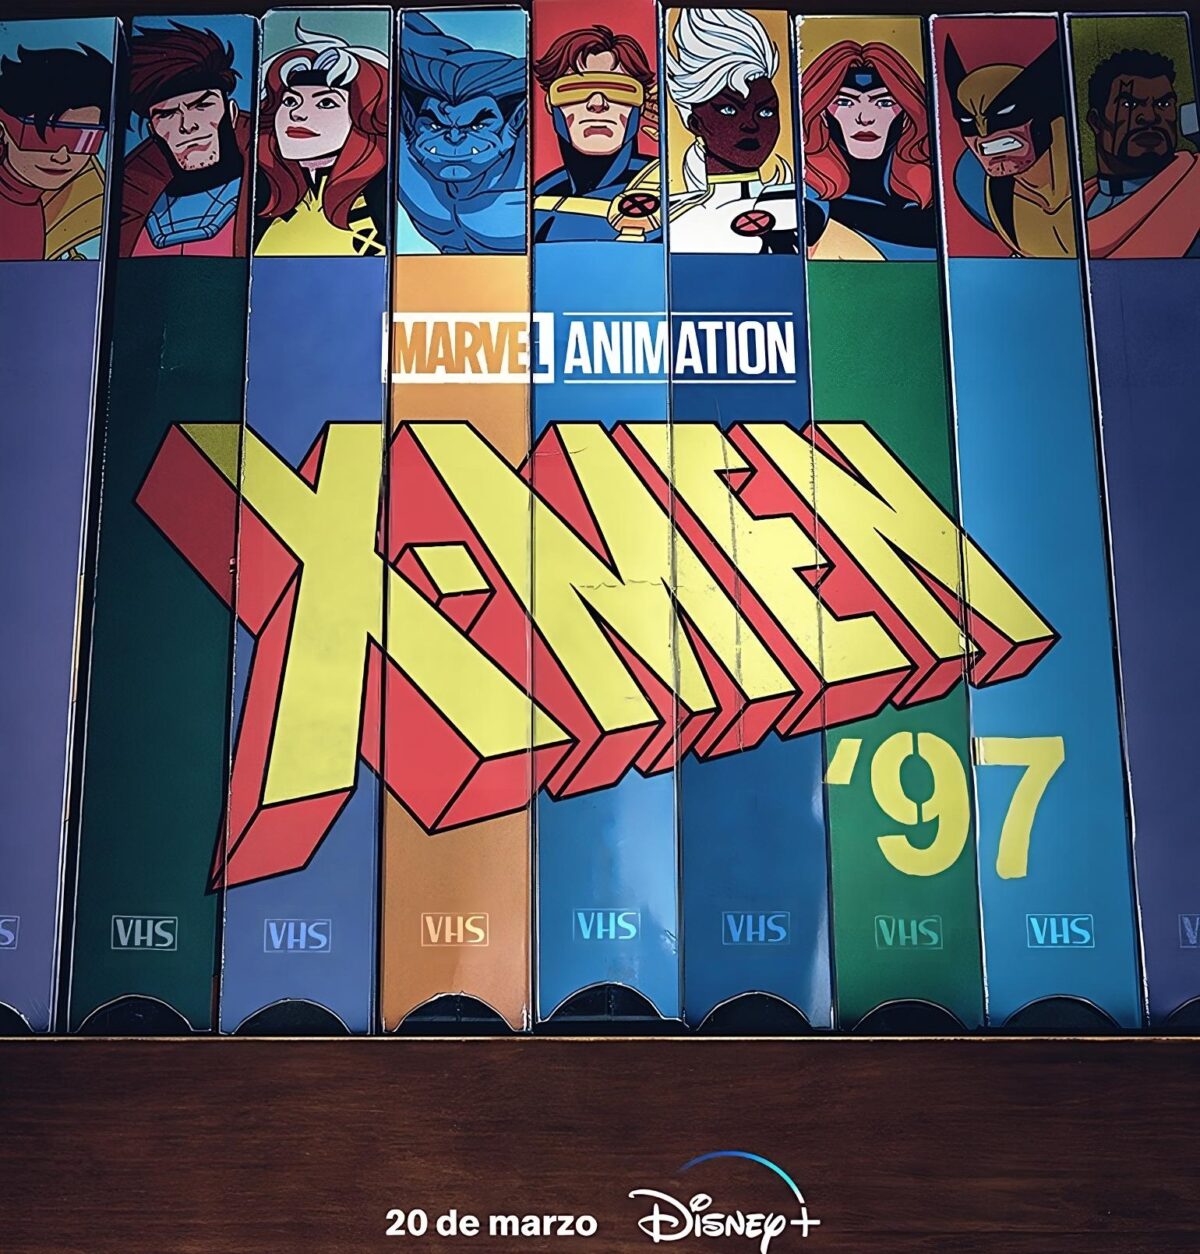 marvel animation presenta x men 97 una nueva era de heroes animados